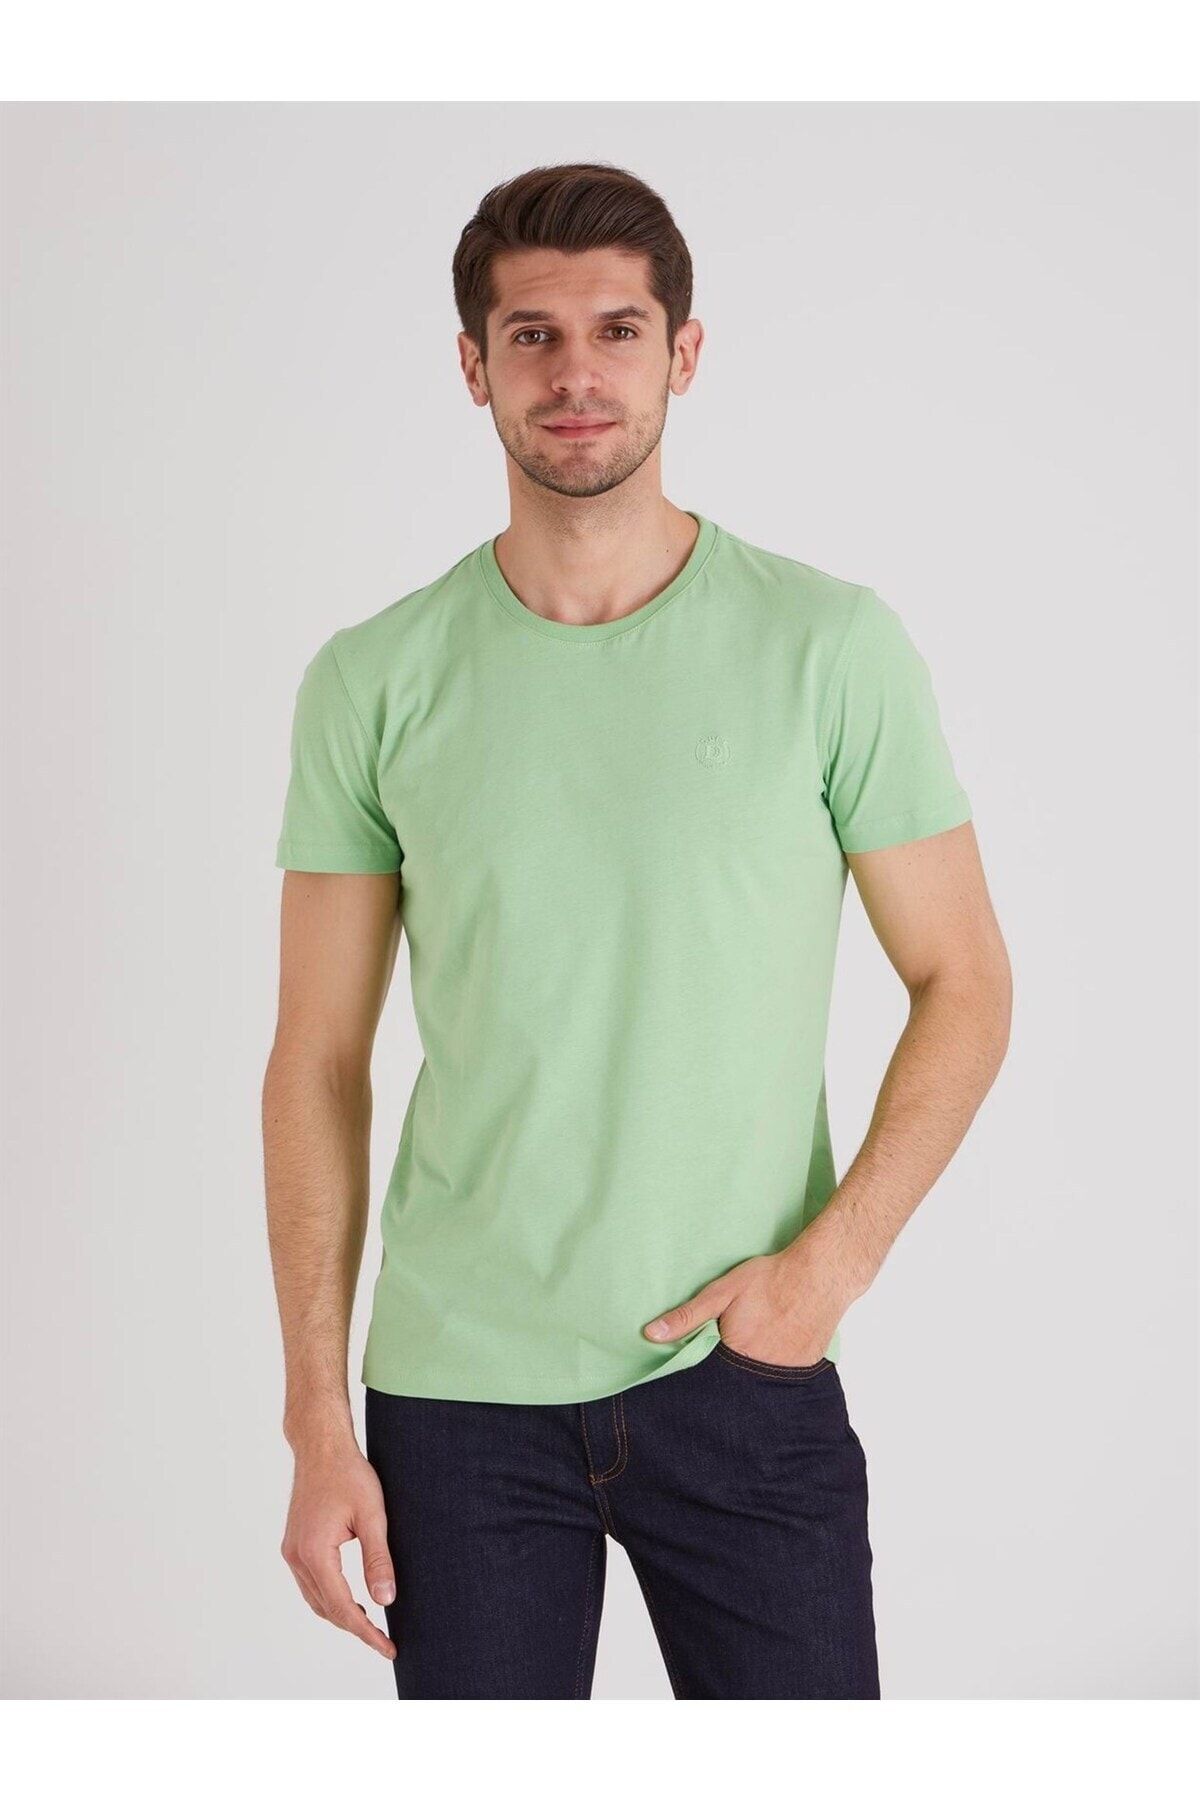 تی شرت مردانه بدون جیب براش دار سبز کمرنگ دوفی Dufy (برند ترکیه)